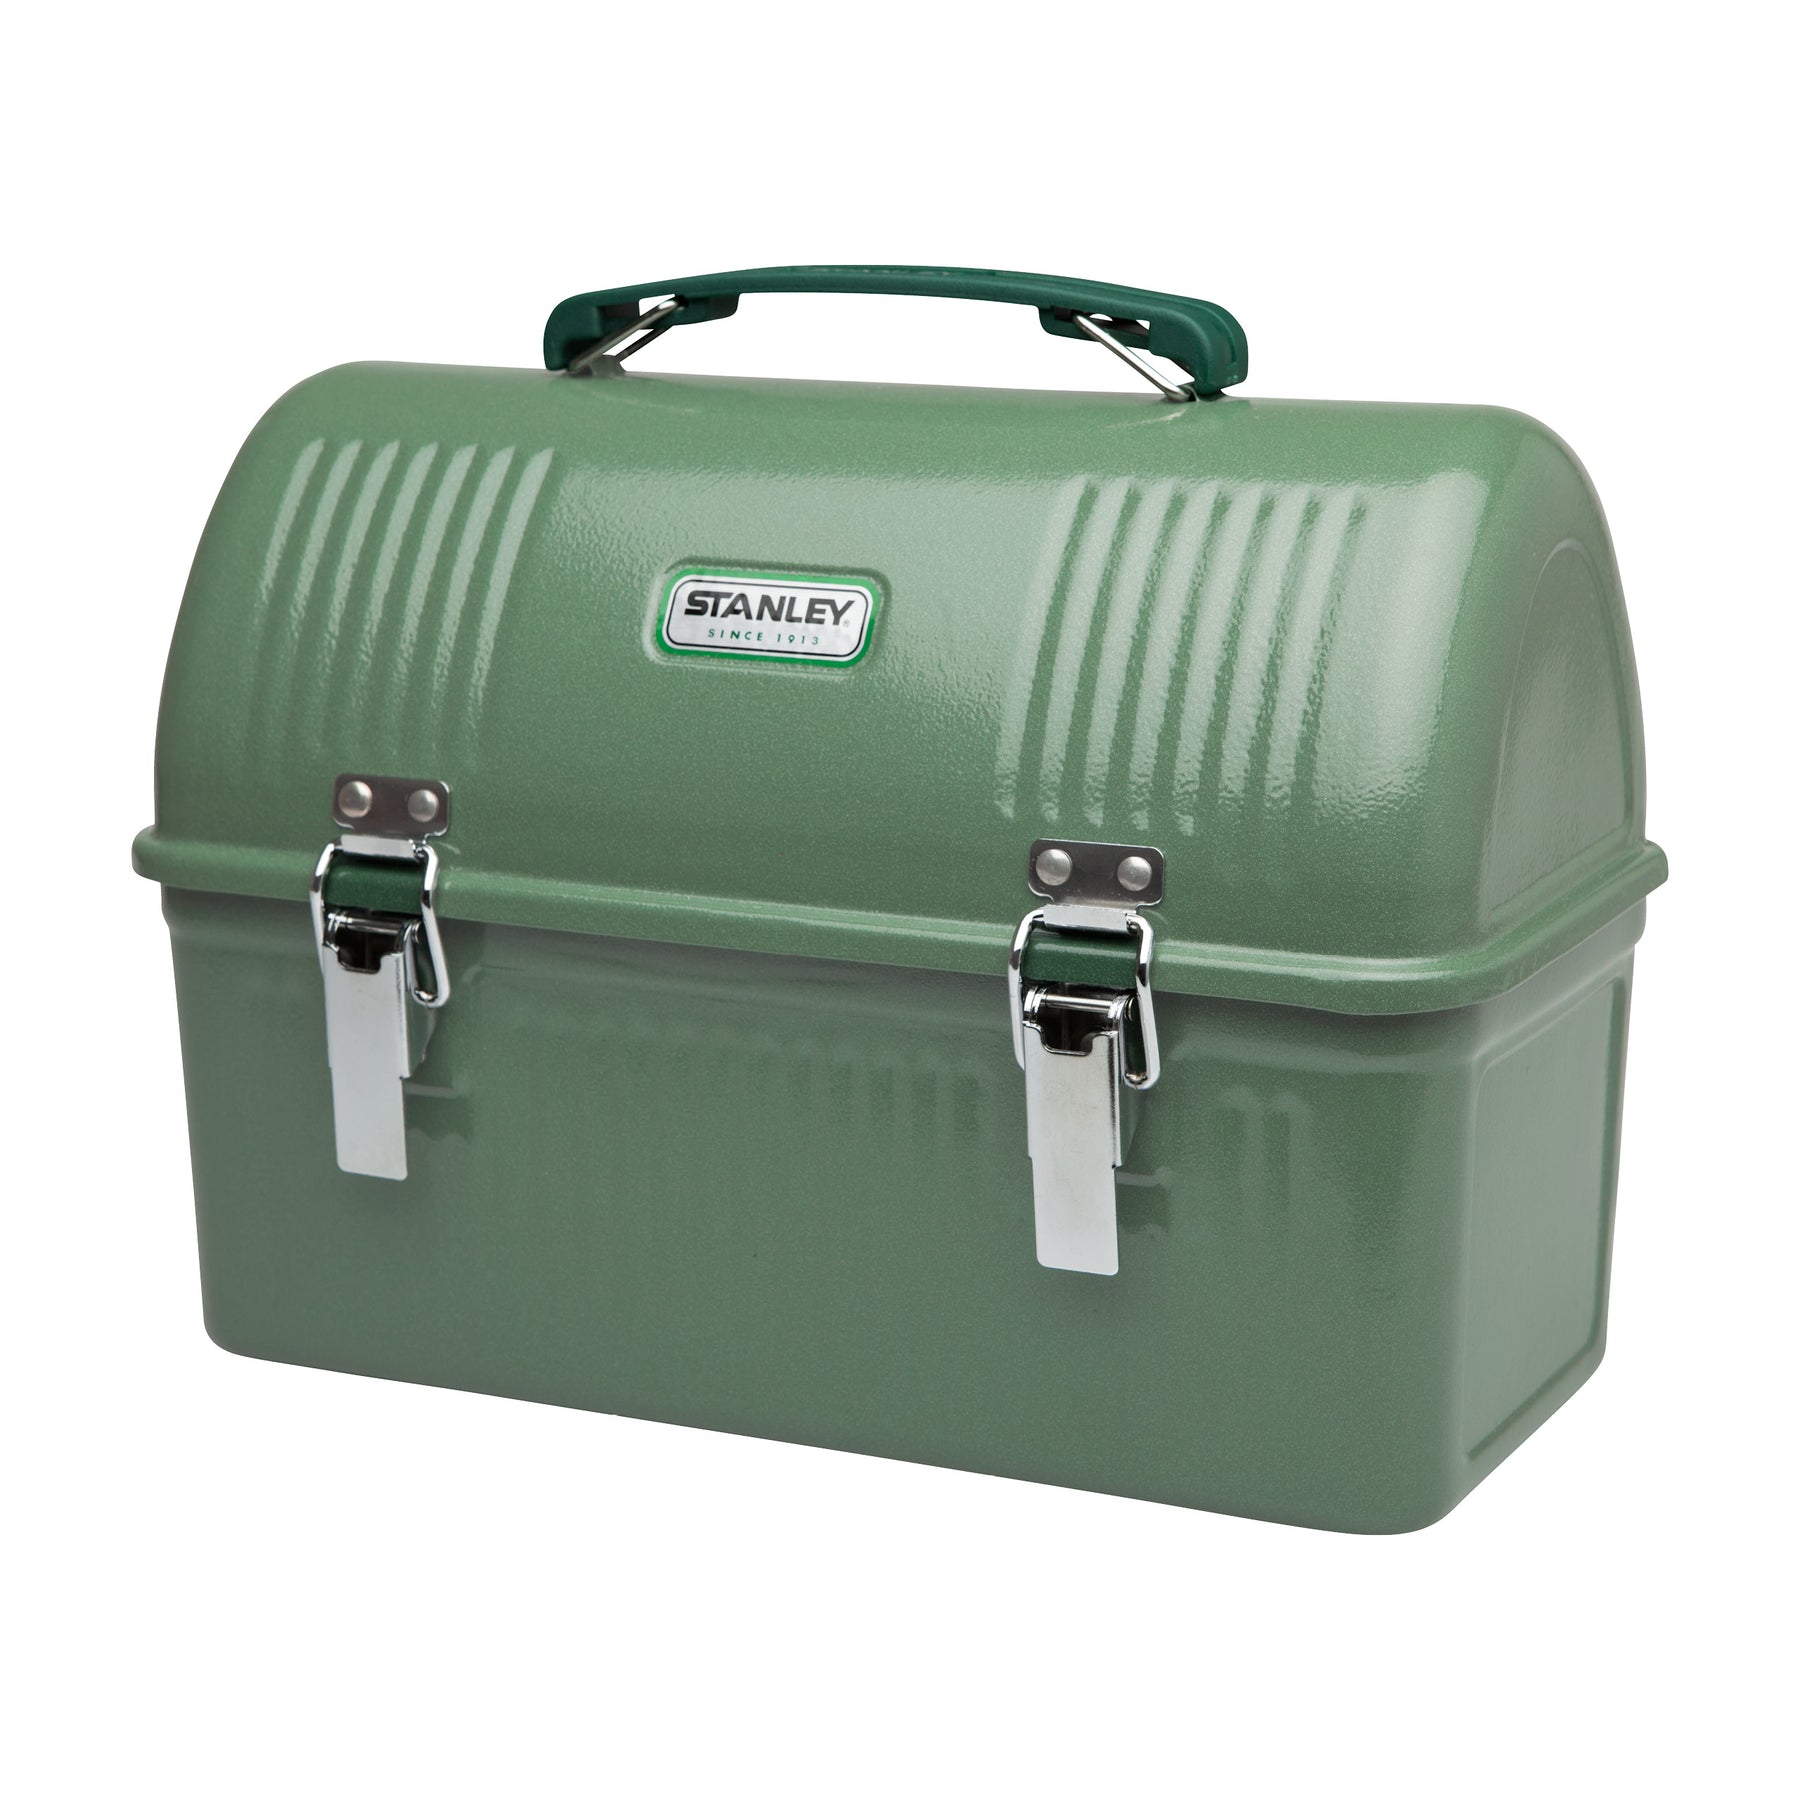 Obědová krabička Lunch box ICONIC CLASSIC 9,5l zelený - STANLEY